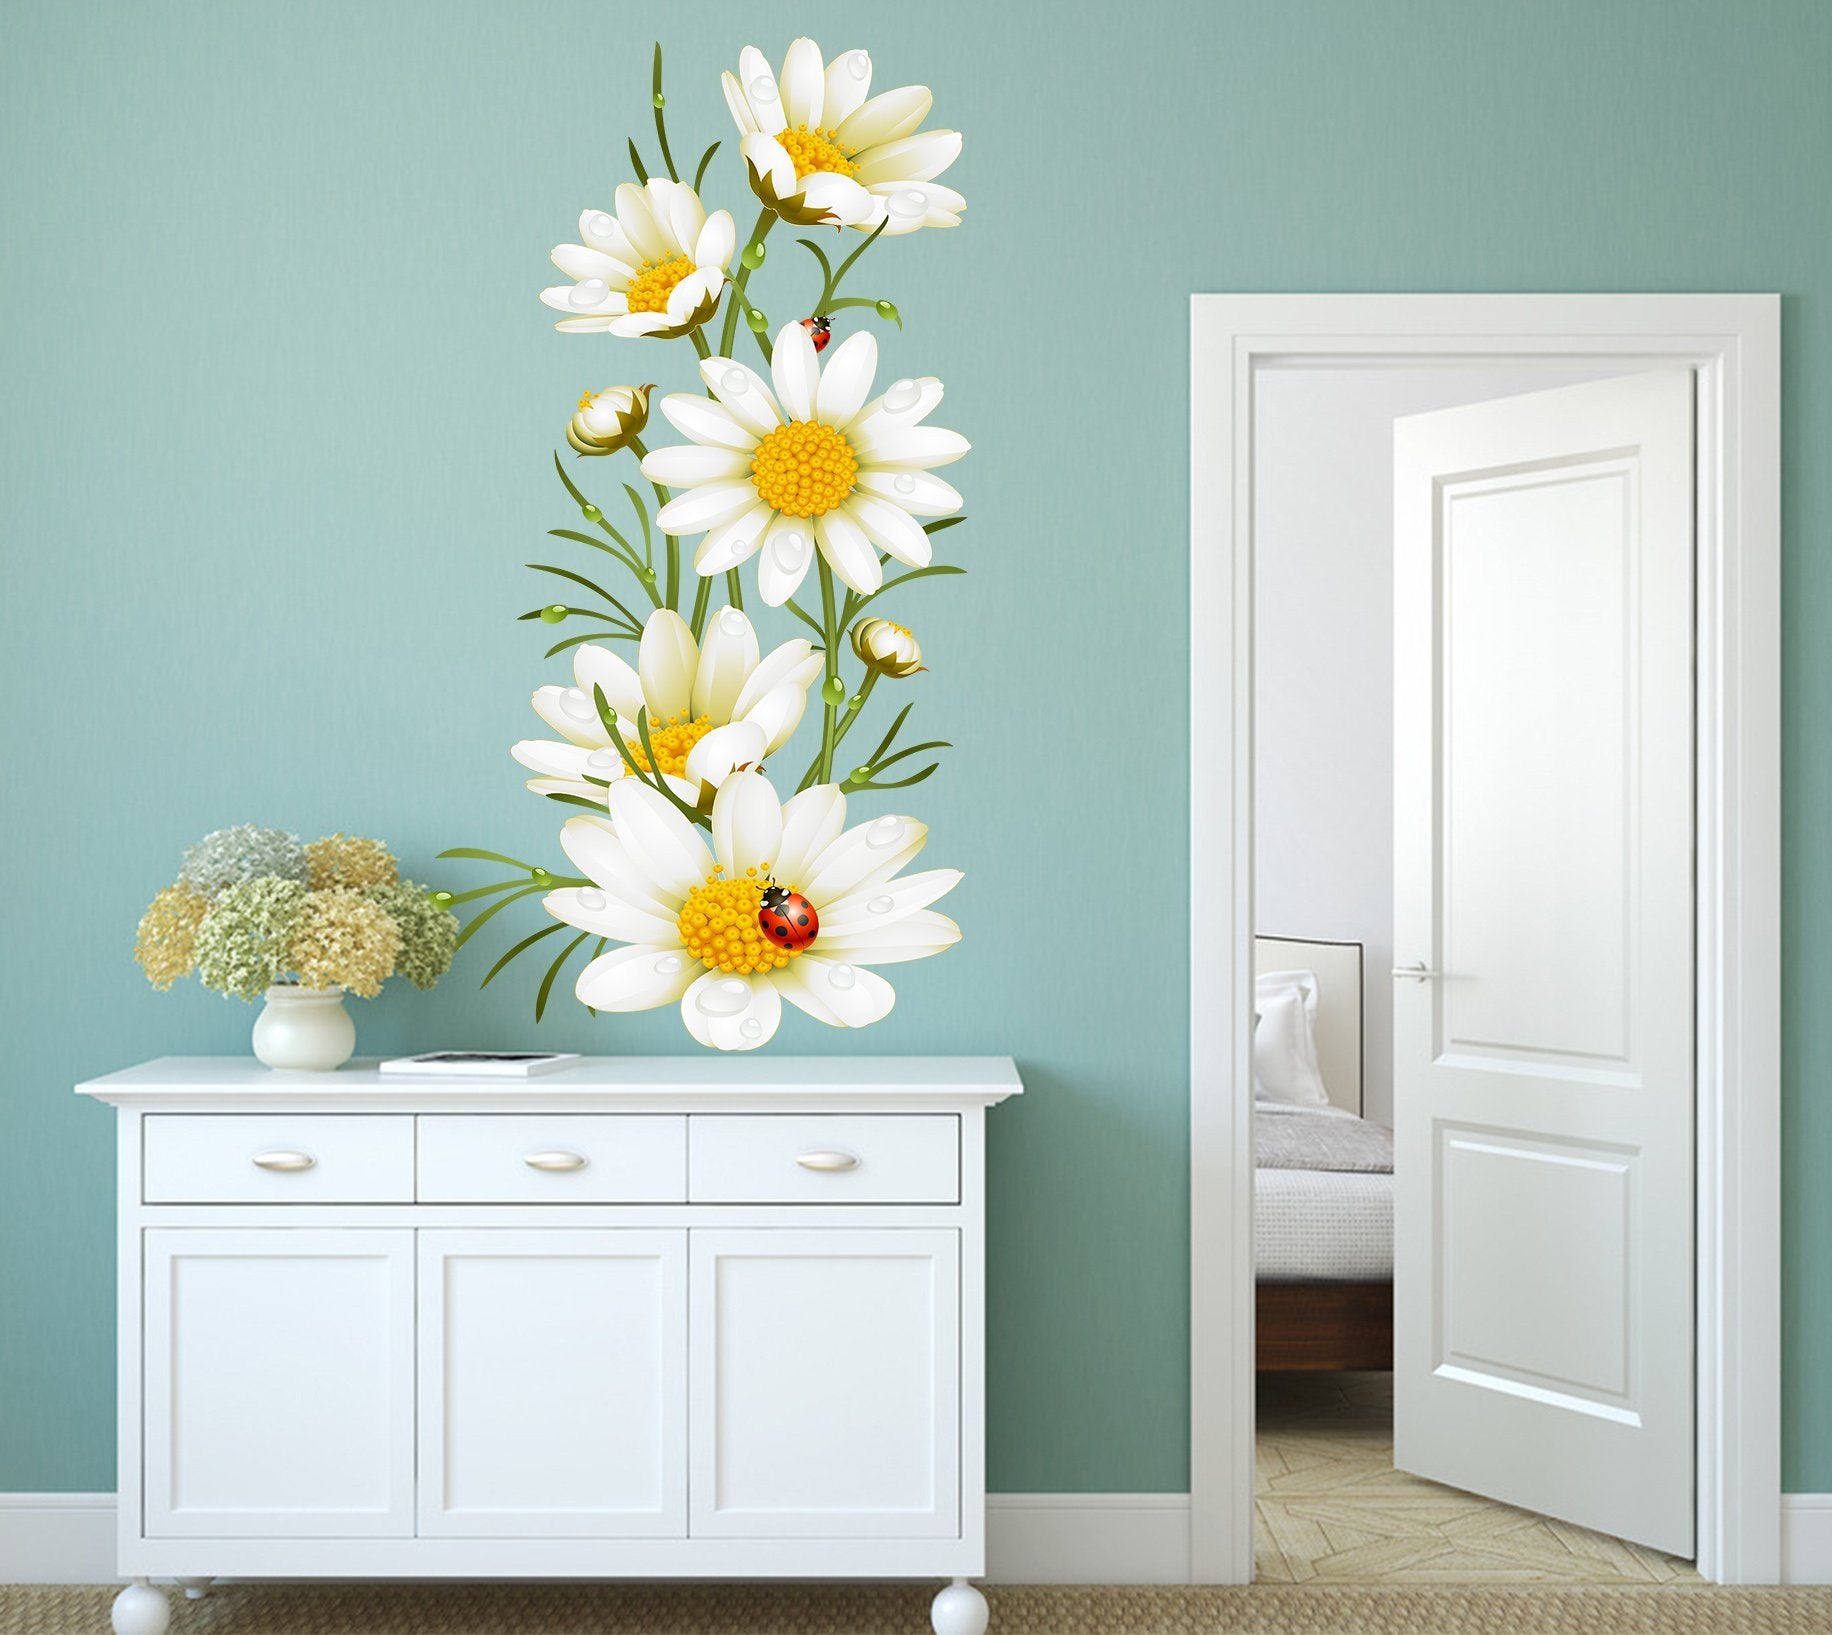 3D White Chrysanthemum 036 Wall Stickers Wallpaper AJ Wallpaper 